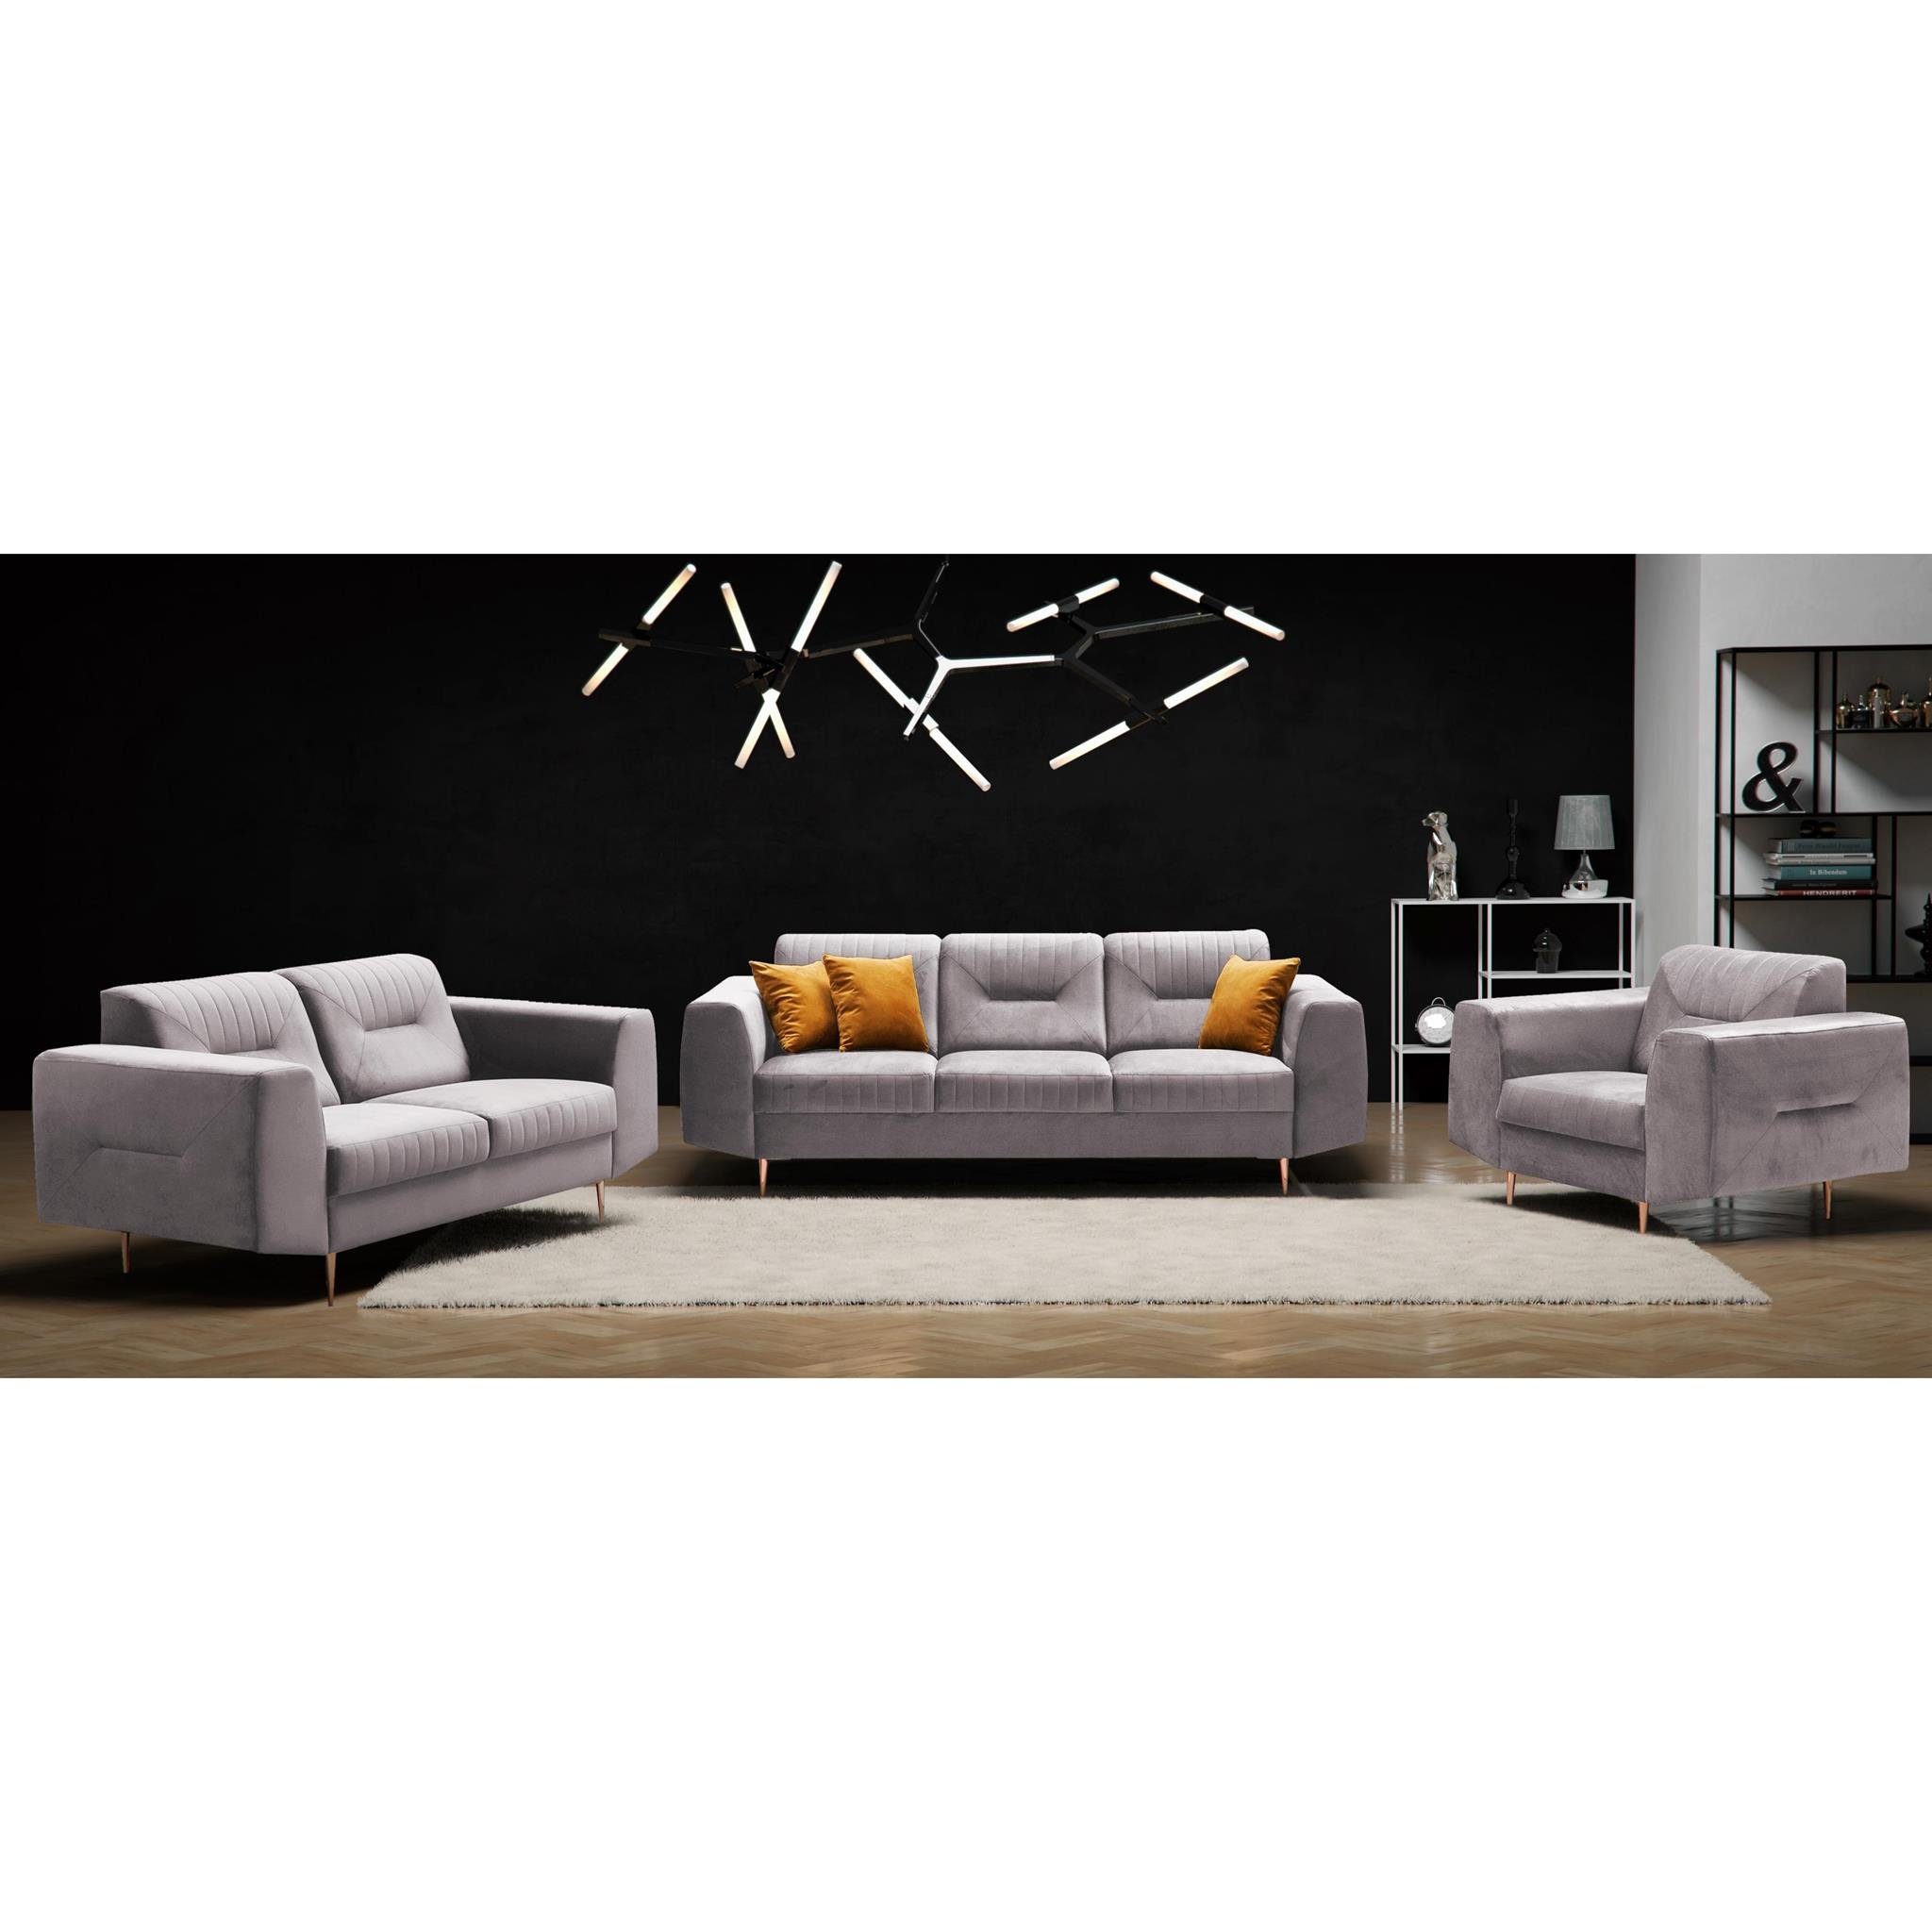 Beautysofa Polstergarnitur VENEZIA, (Sessel + 2-Sitzer Sofa + 3-Sitzer Sofa im modernes Design), mit Metallbeine, Couchgarnituren aus Velours Puderrosa (bluvel 91)